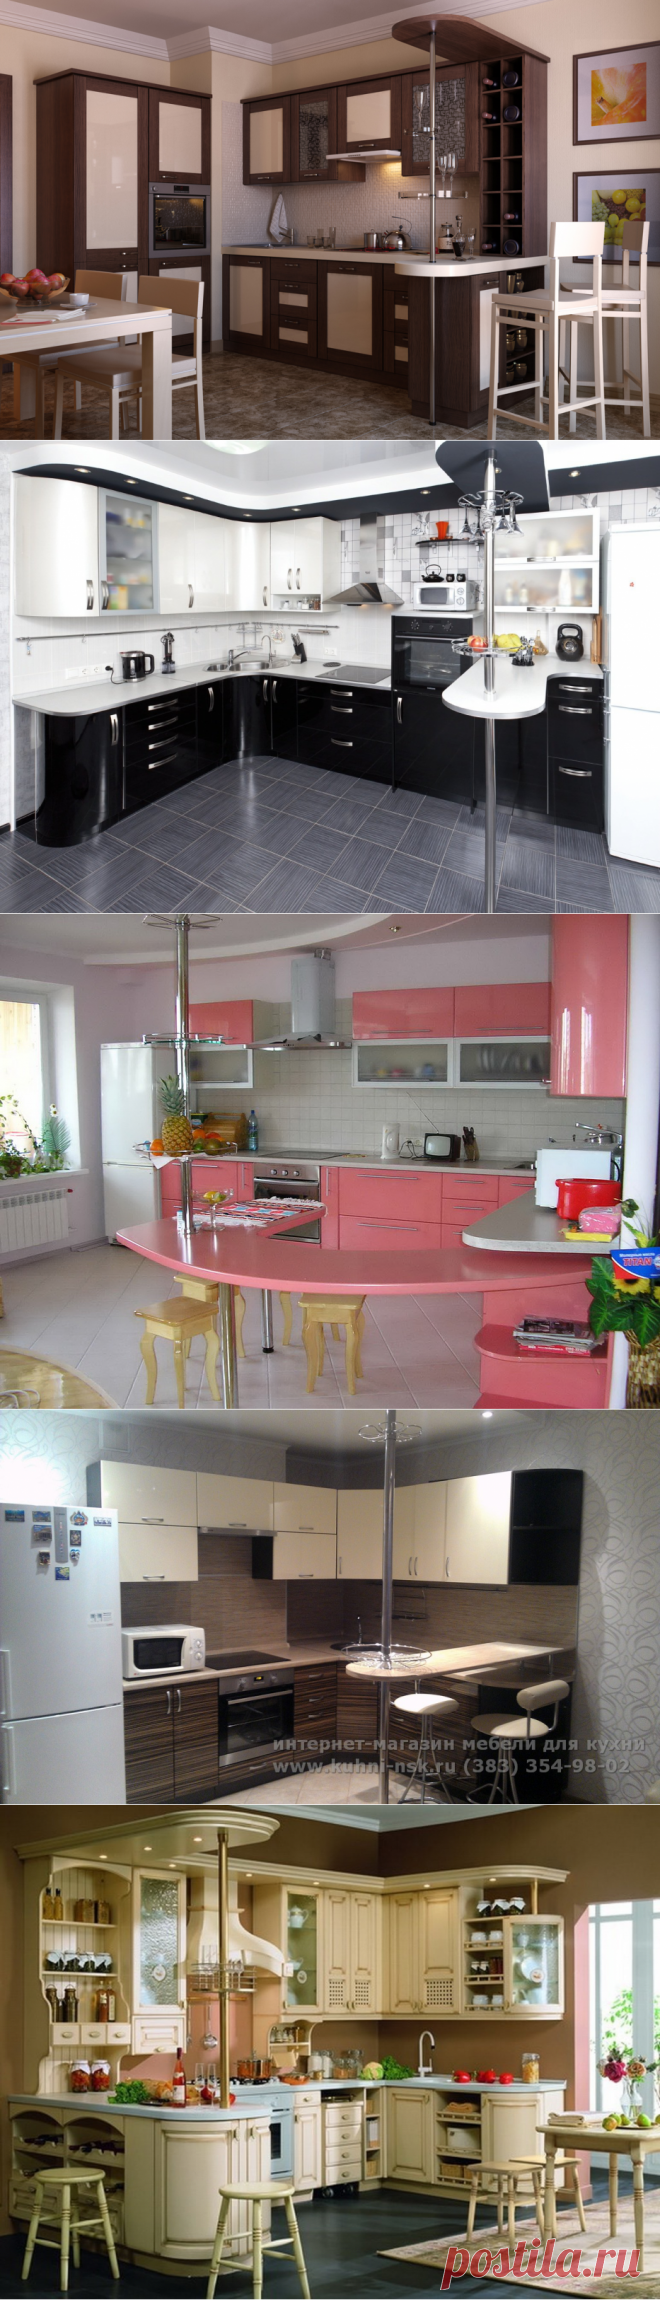 кухни угловые с барной стойкой: 18 тыс изображений найдено в Яндекс.Картинках